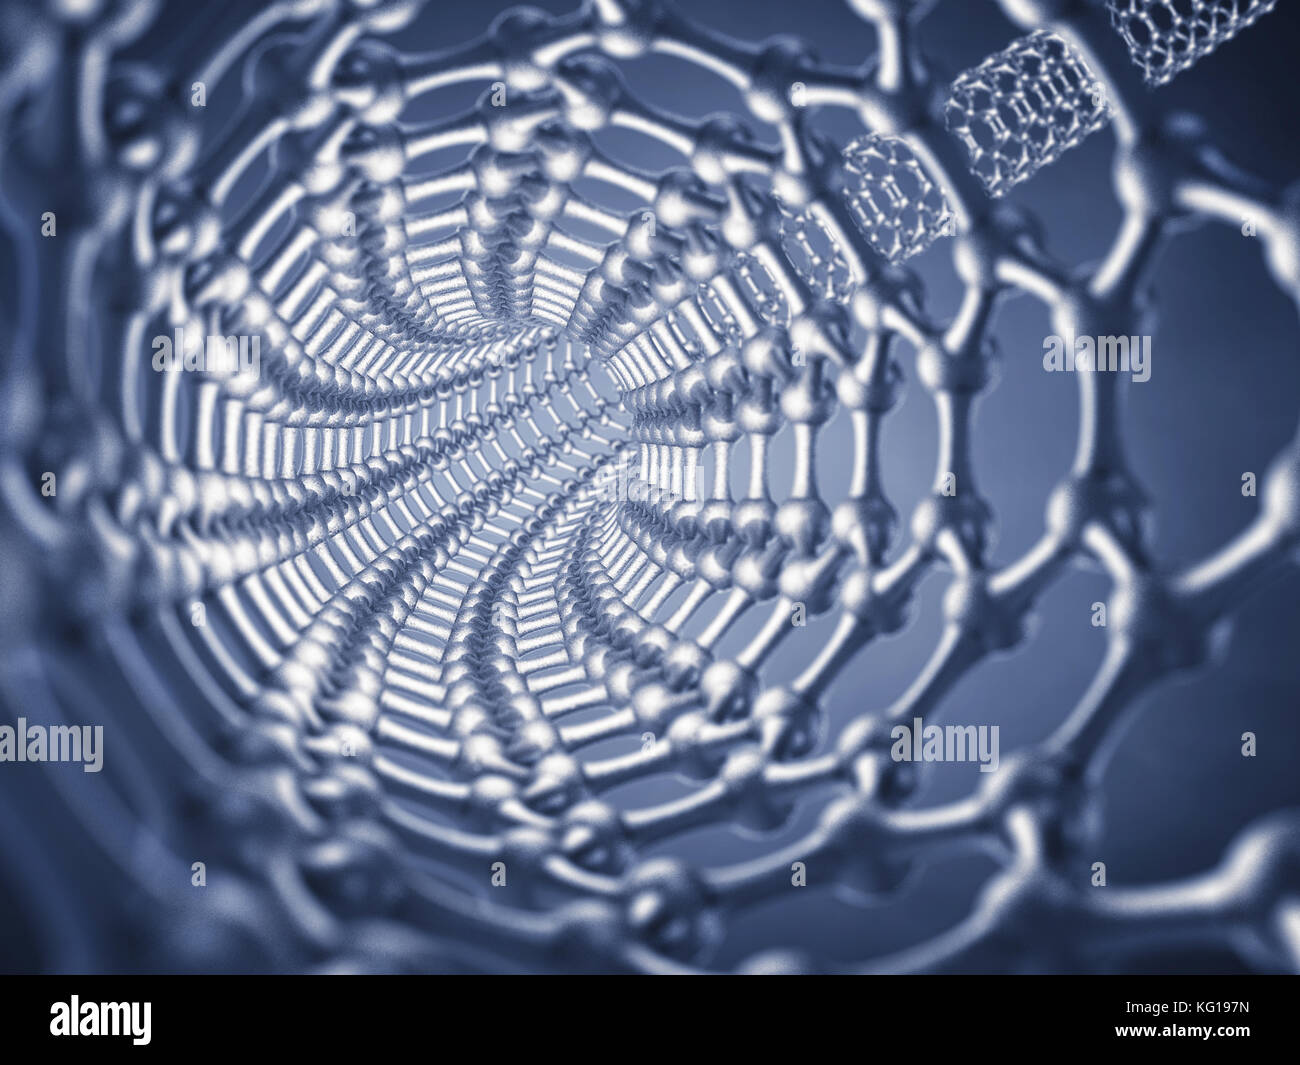 Graphen nanotube von Innen, die Forschung im Bereich Nanotechnologie gesehen Stockfoto